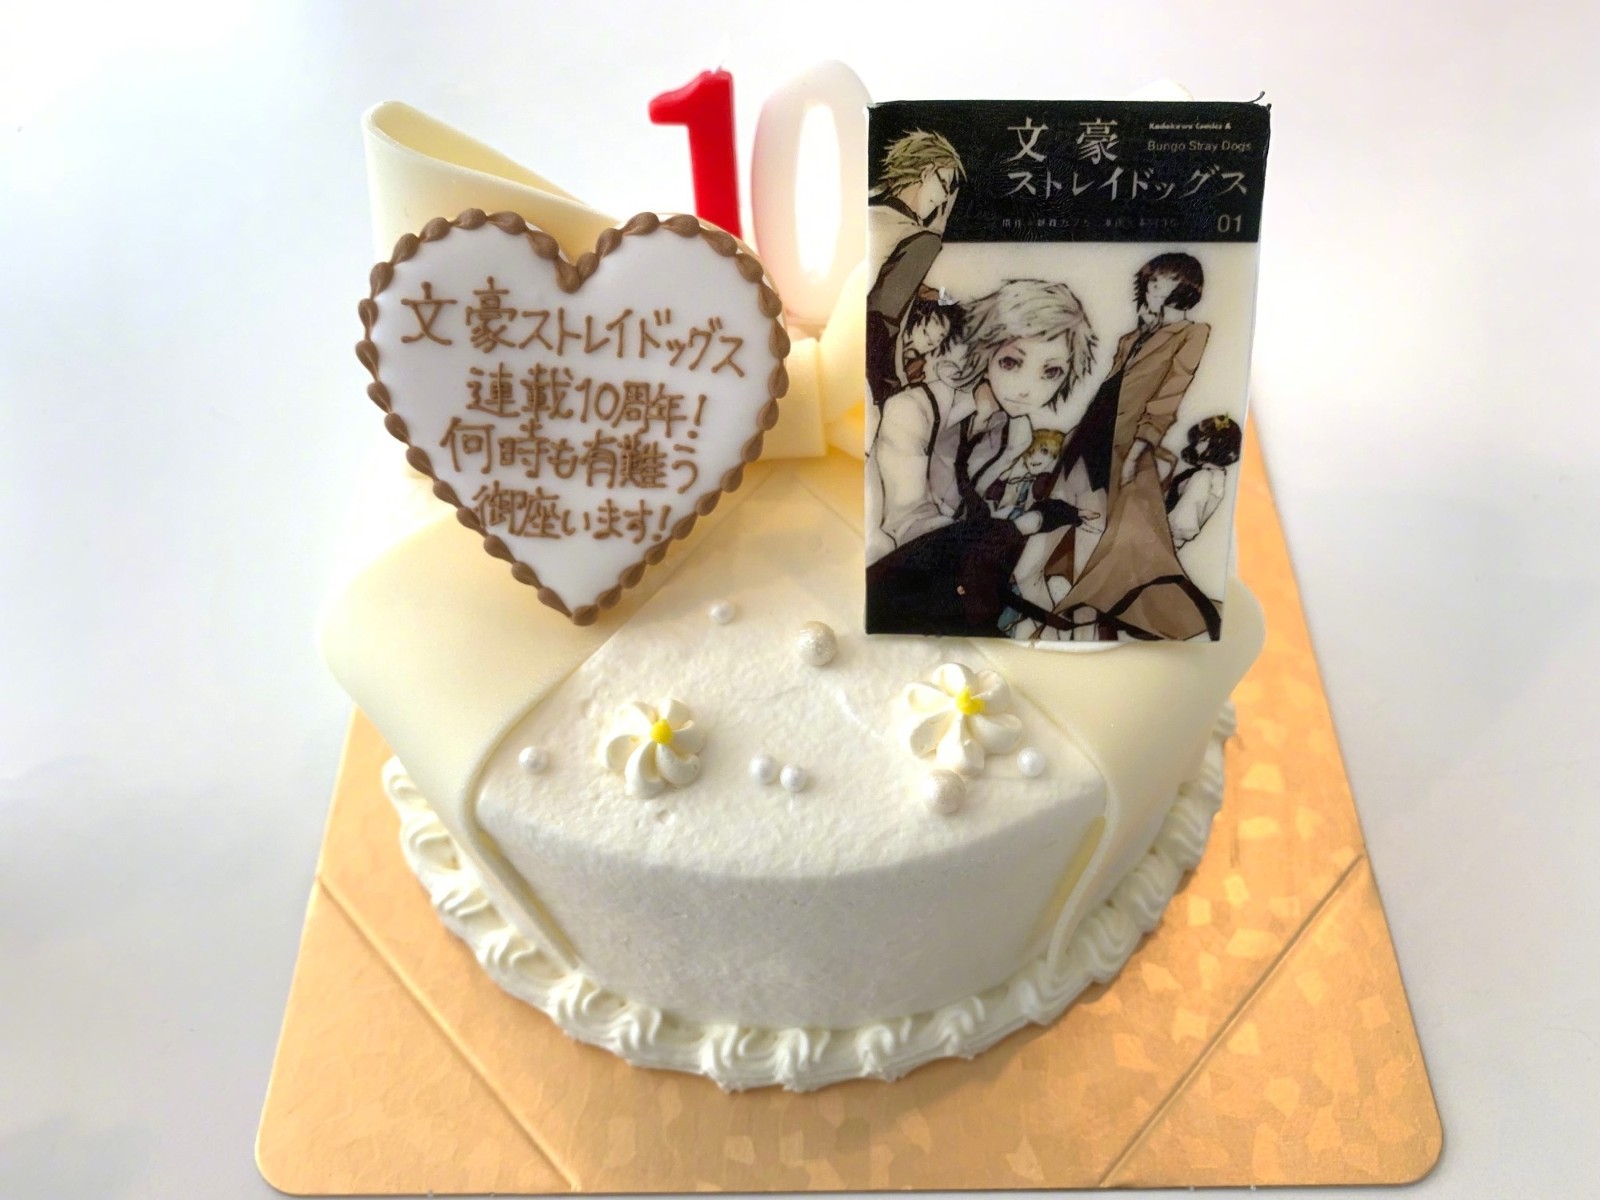 《文豪野犬》官推发布了10周年纪念蛋糕